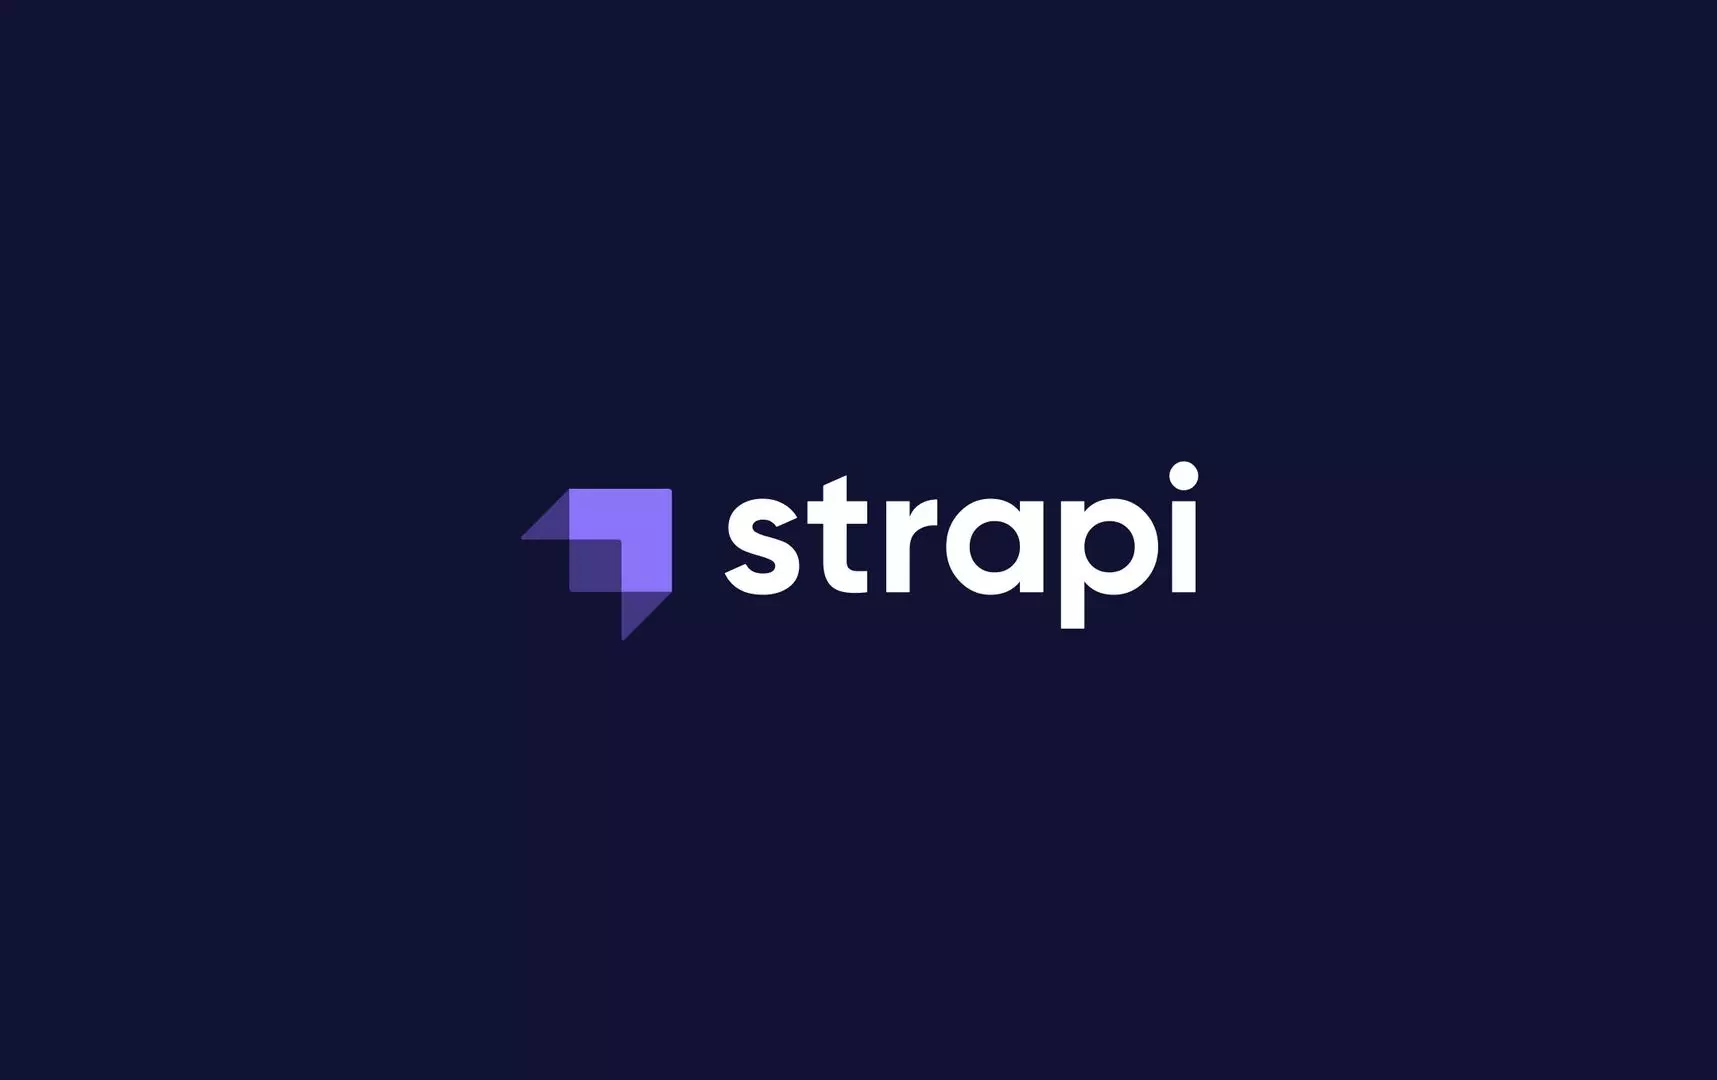 VatiLab est devenu un partenaire officiel de la communauté Strapi.